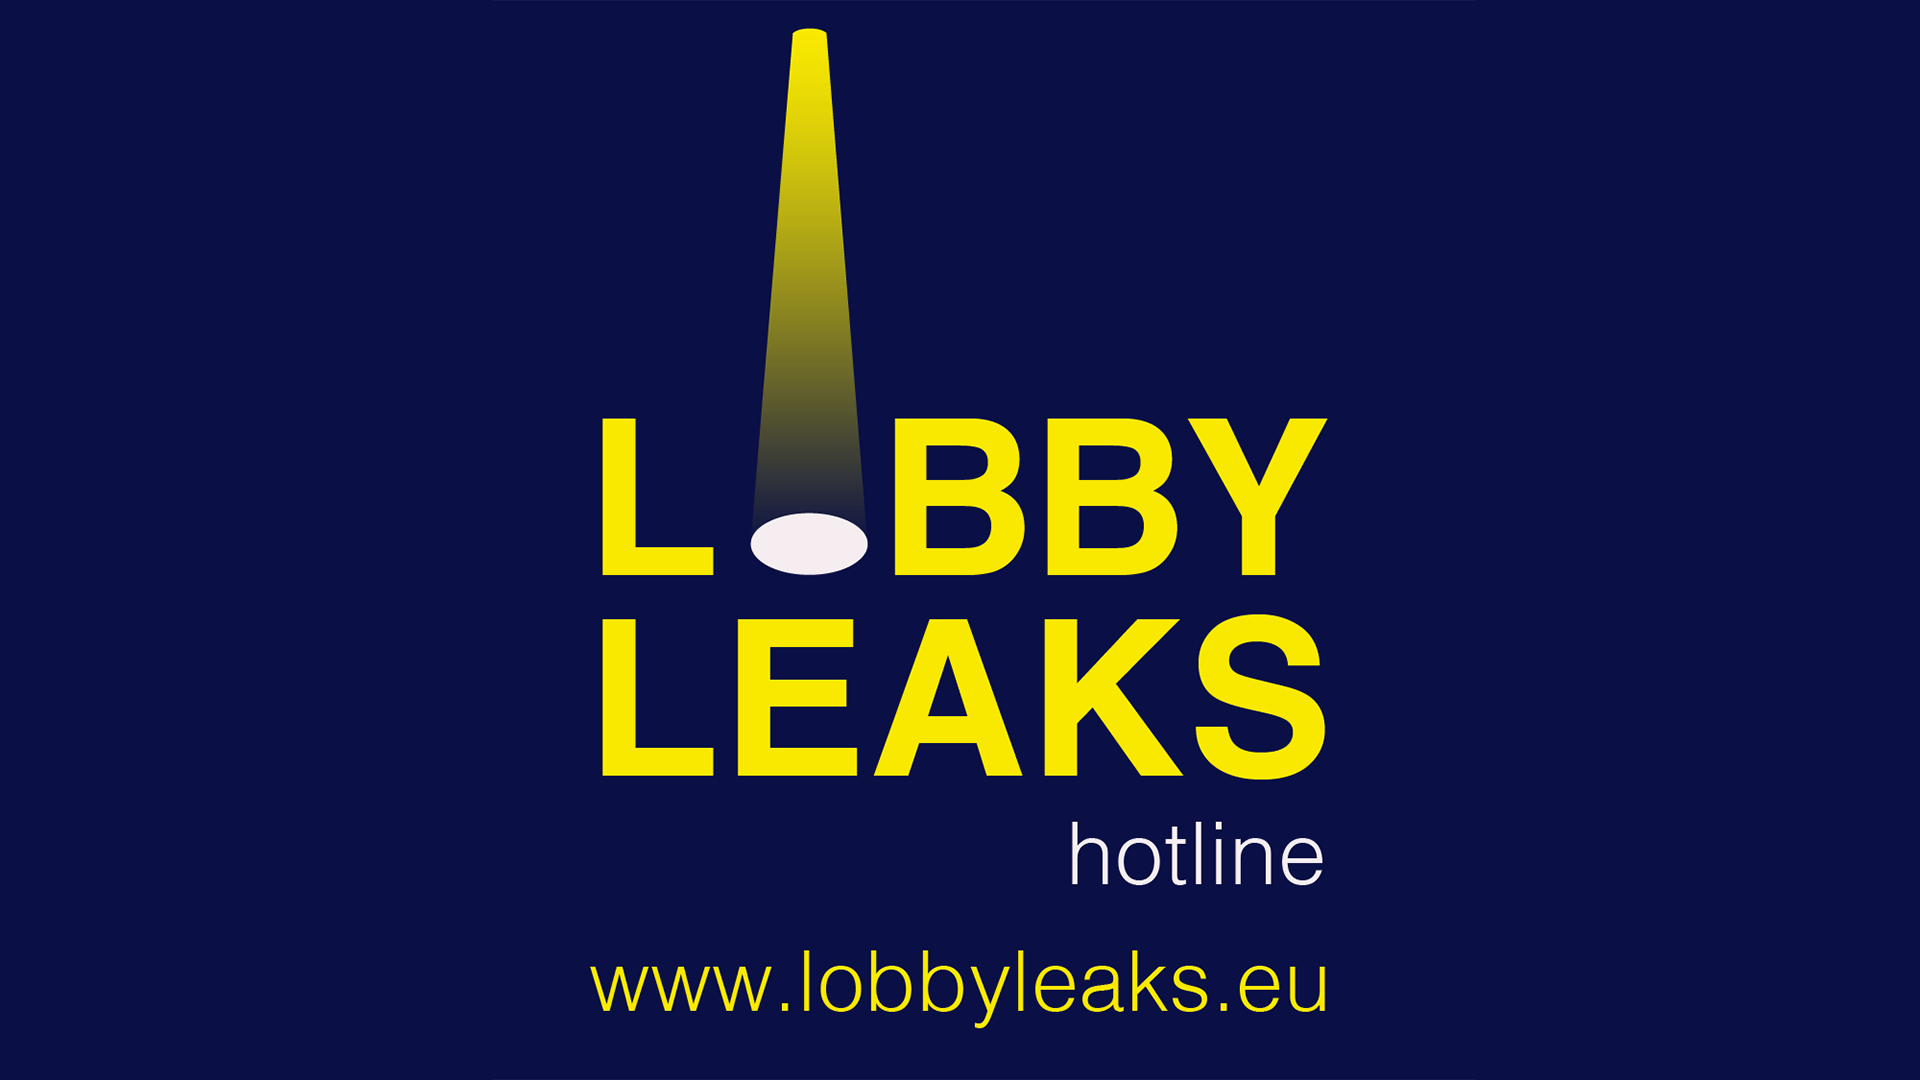 Lobbyleaks Hotline